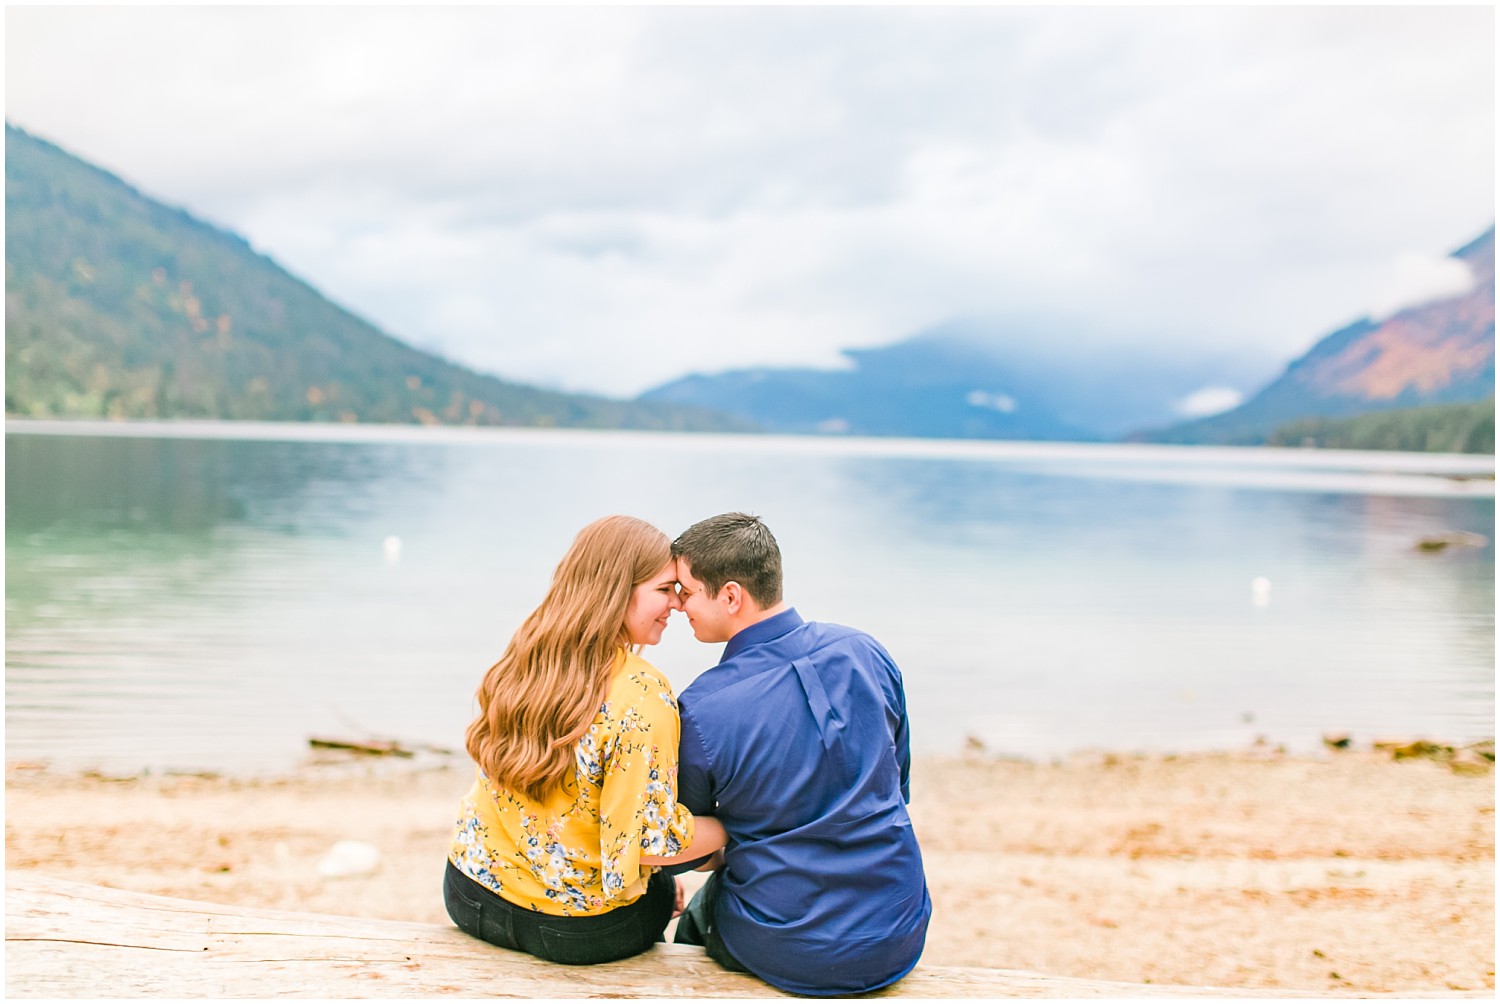 Autumn Lake Wenatchee Engagement Session | Jacob & Madeline